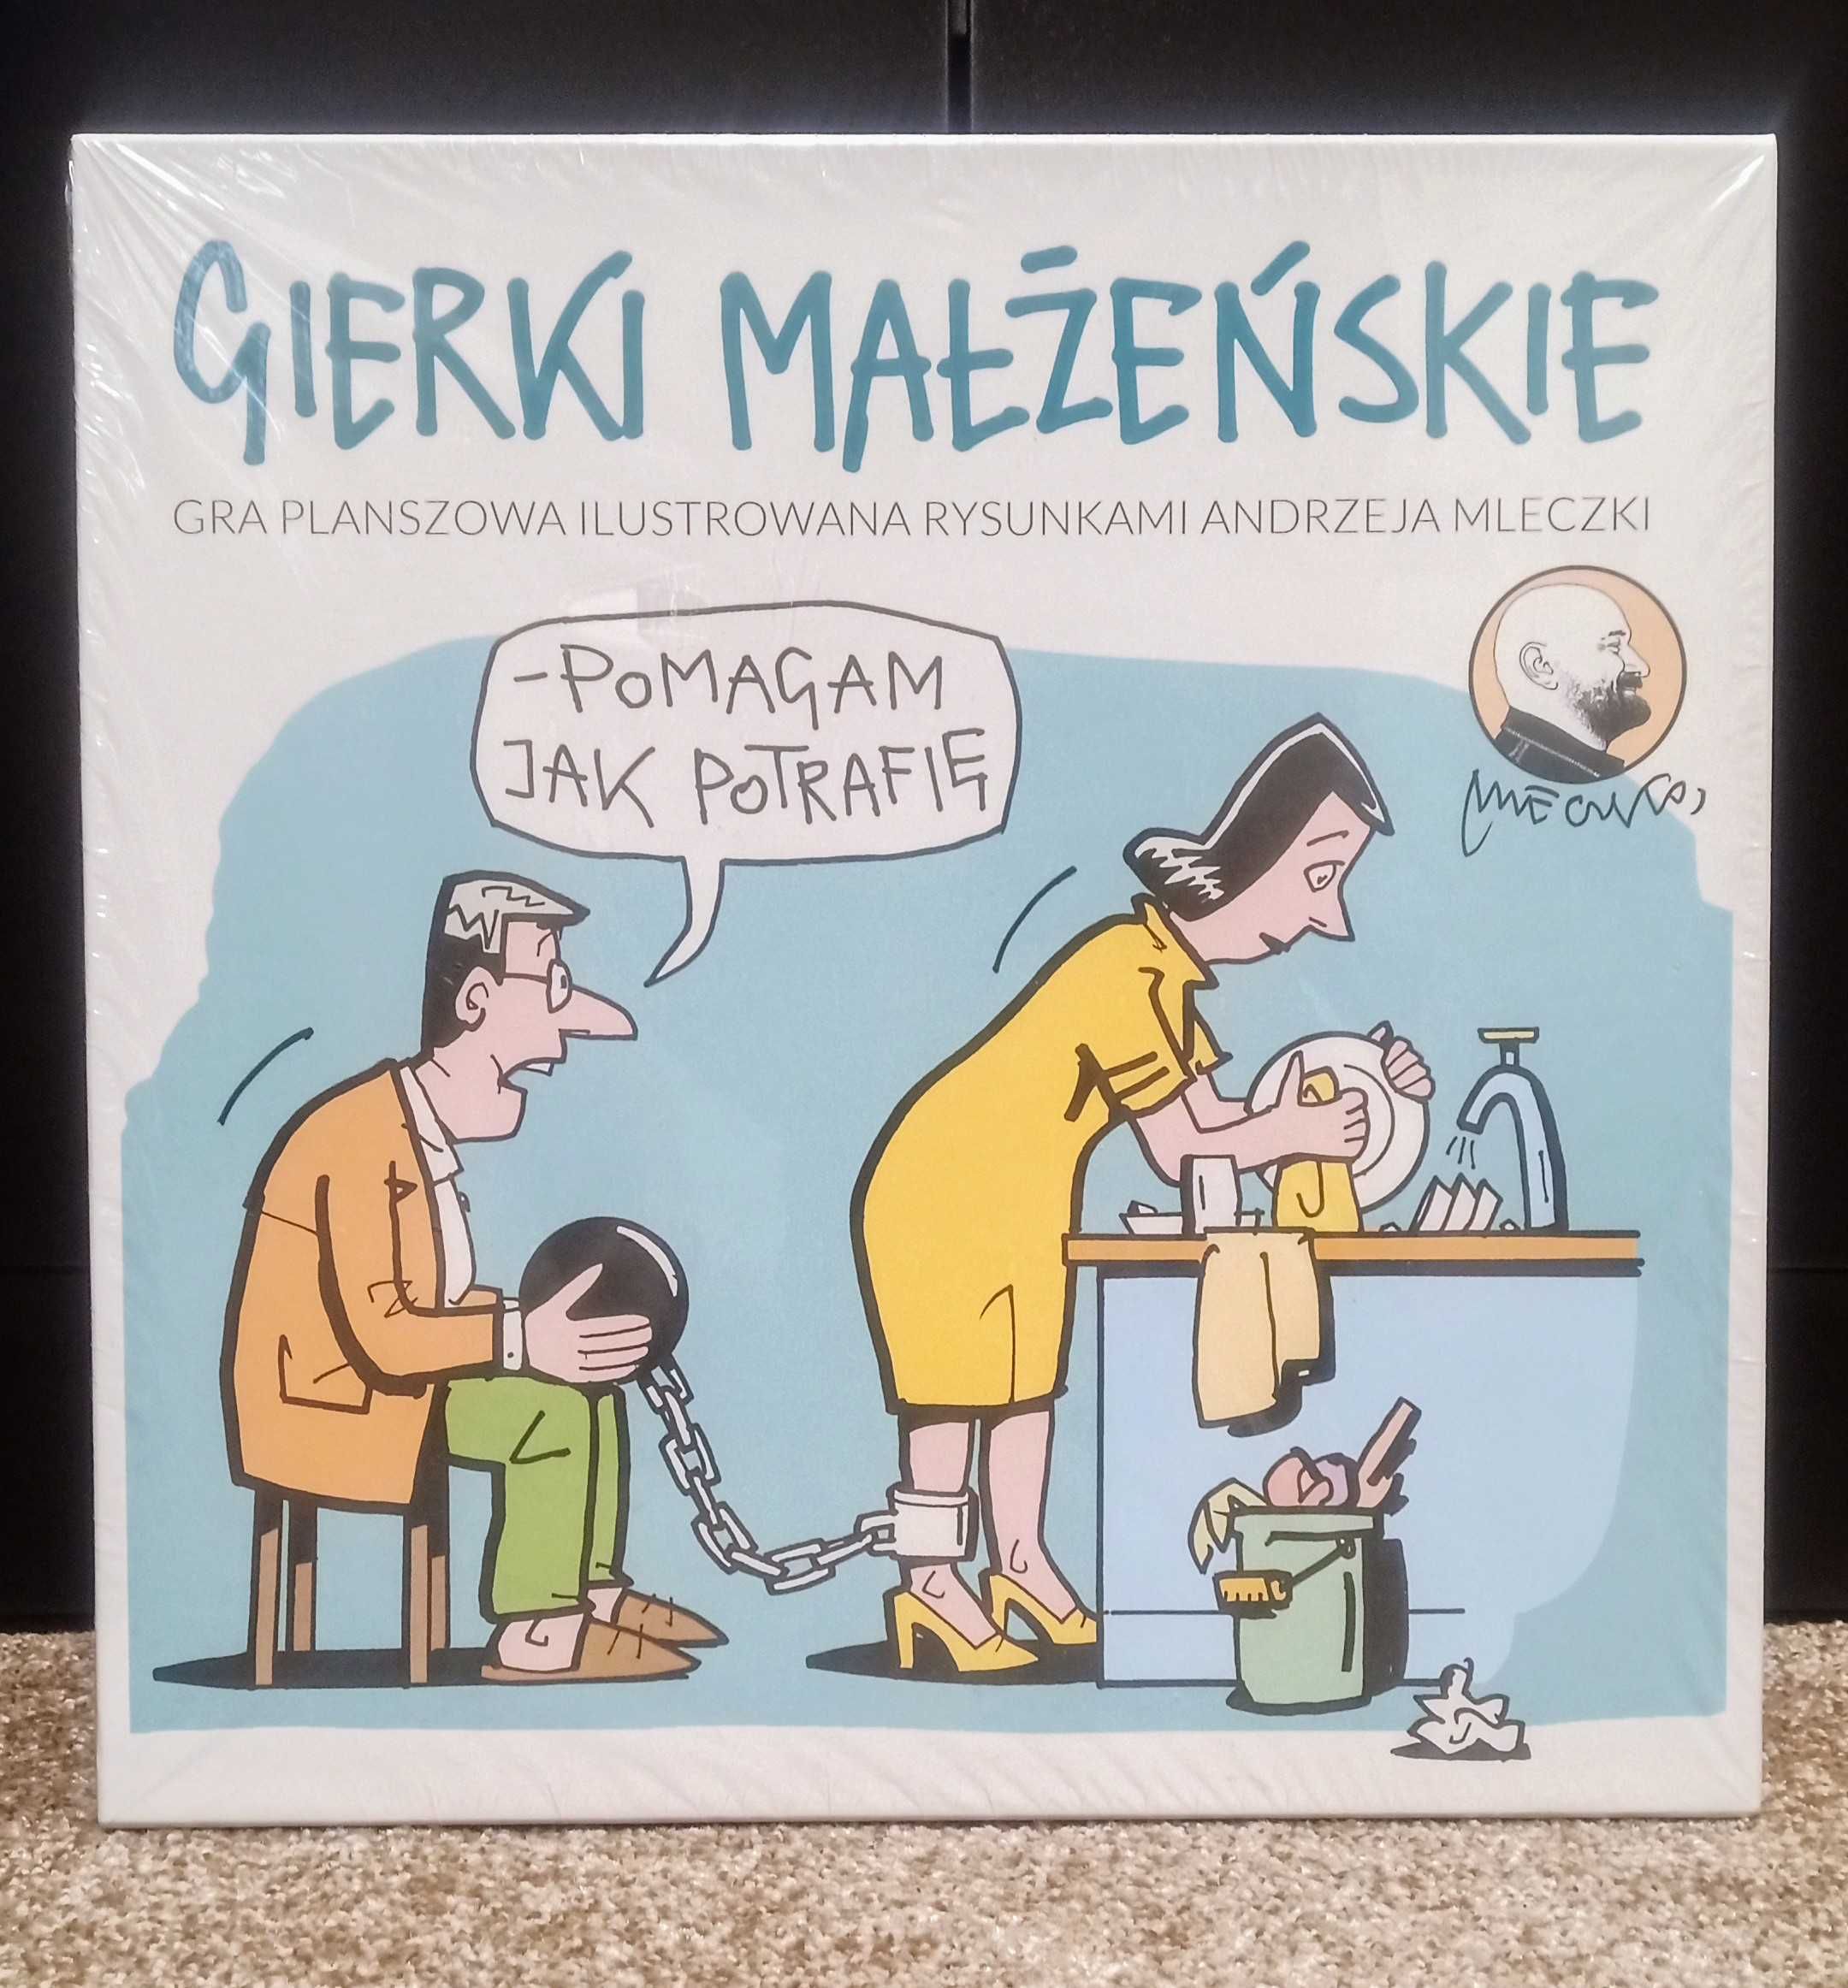 Gierki małżeńskie Gra planszowa ilustrowana rysunkami Andrzeja Mleczki